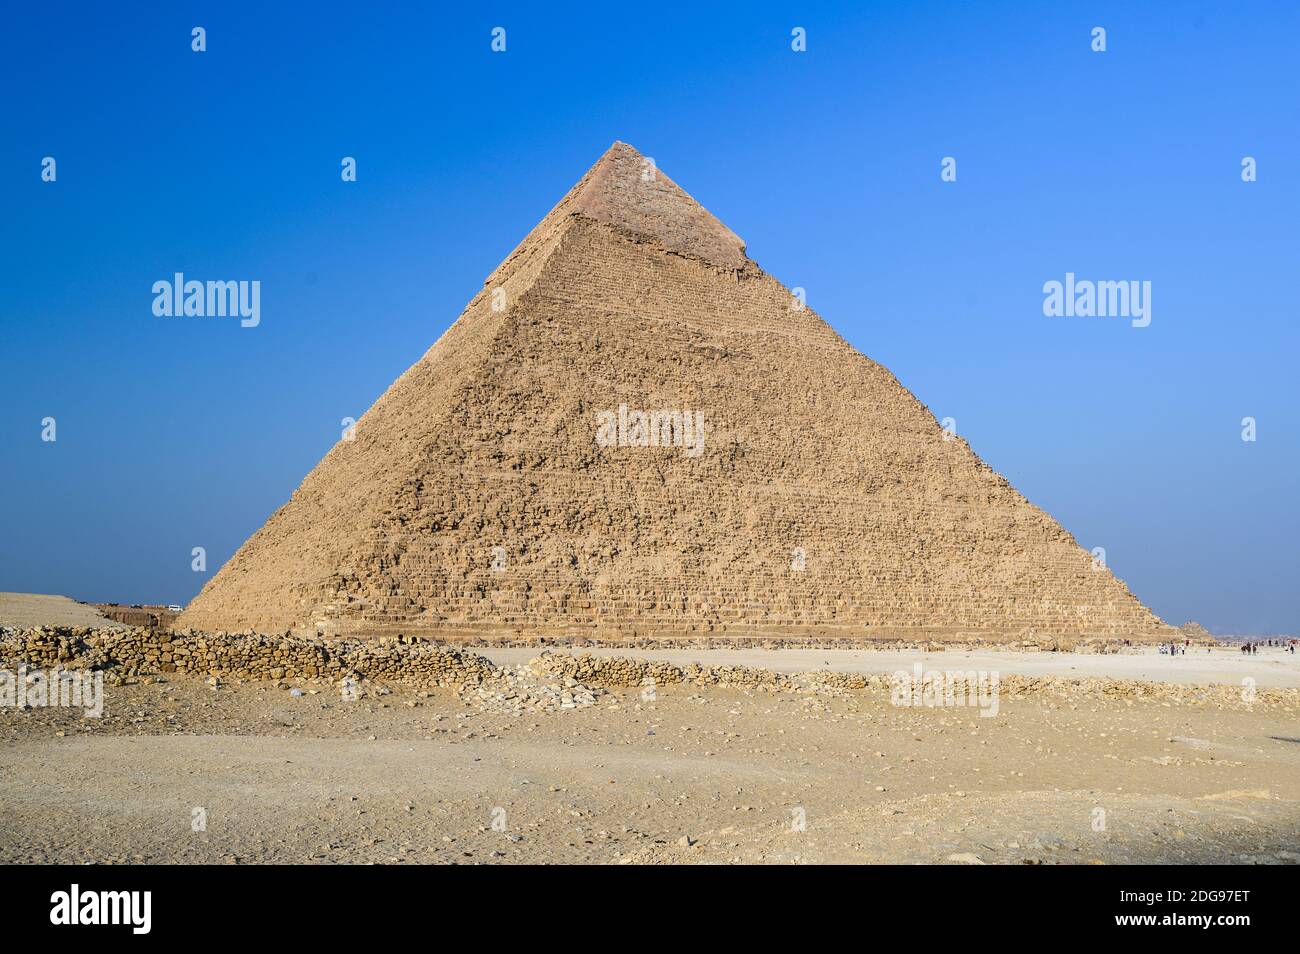 Pyramid of Khafre, Giza Pyramid Complex, Giza, Cairo, Egypt Stock Photo